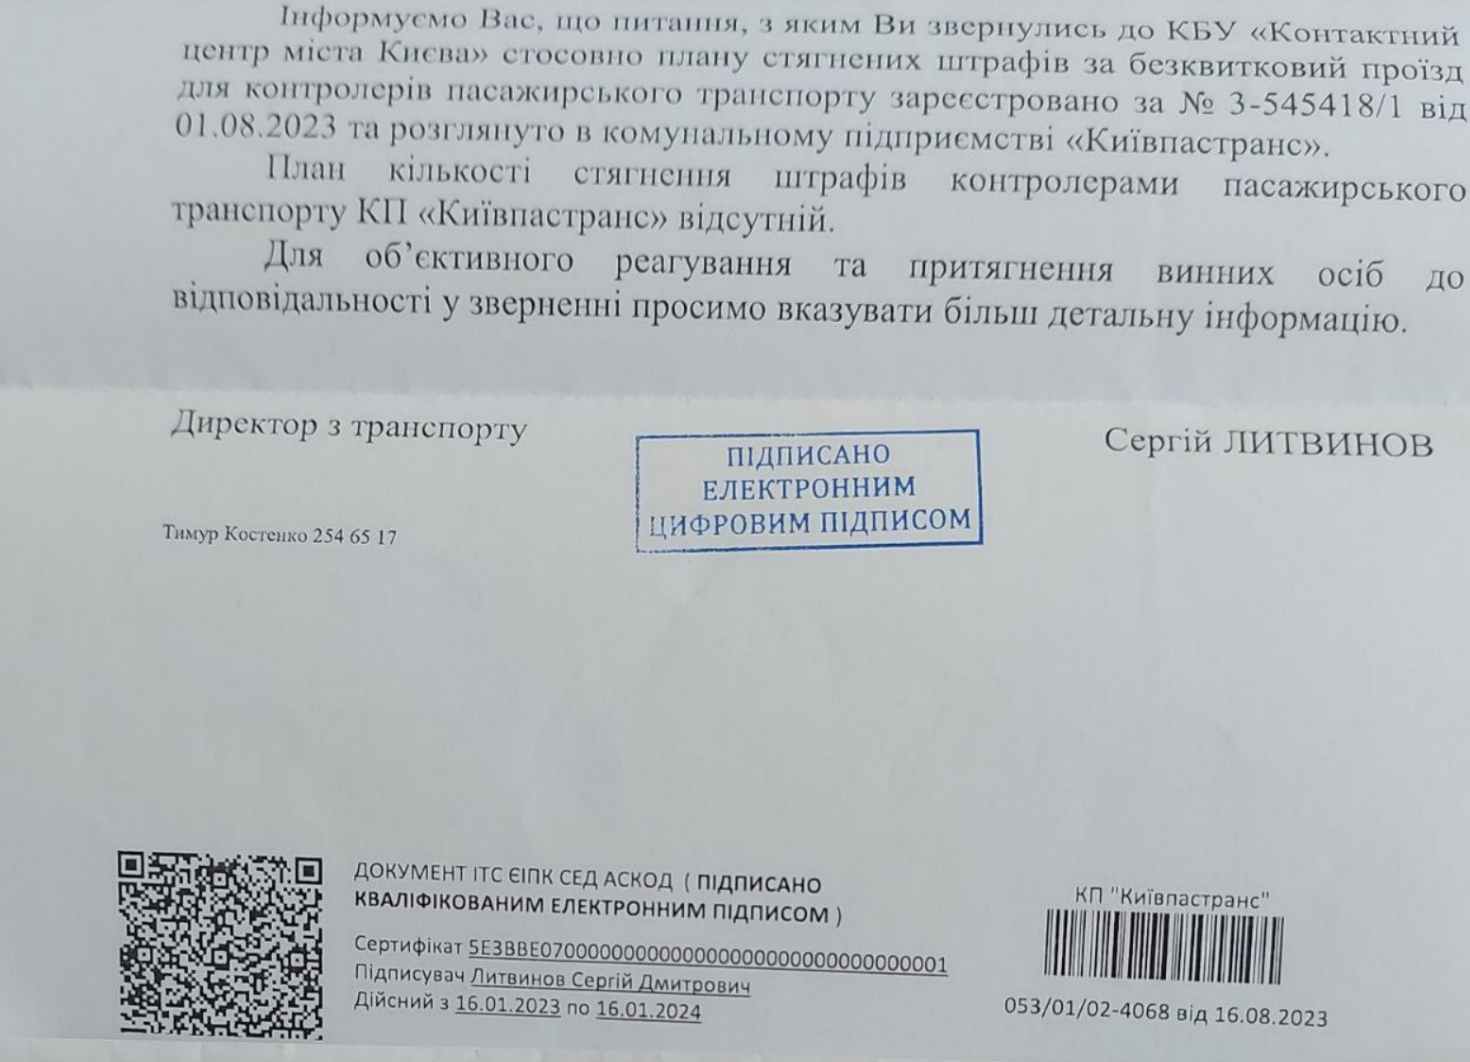 Контролери "Київпастрансу" вимушені щодня штрафувати пасажирів: причина